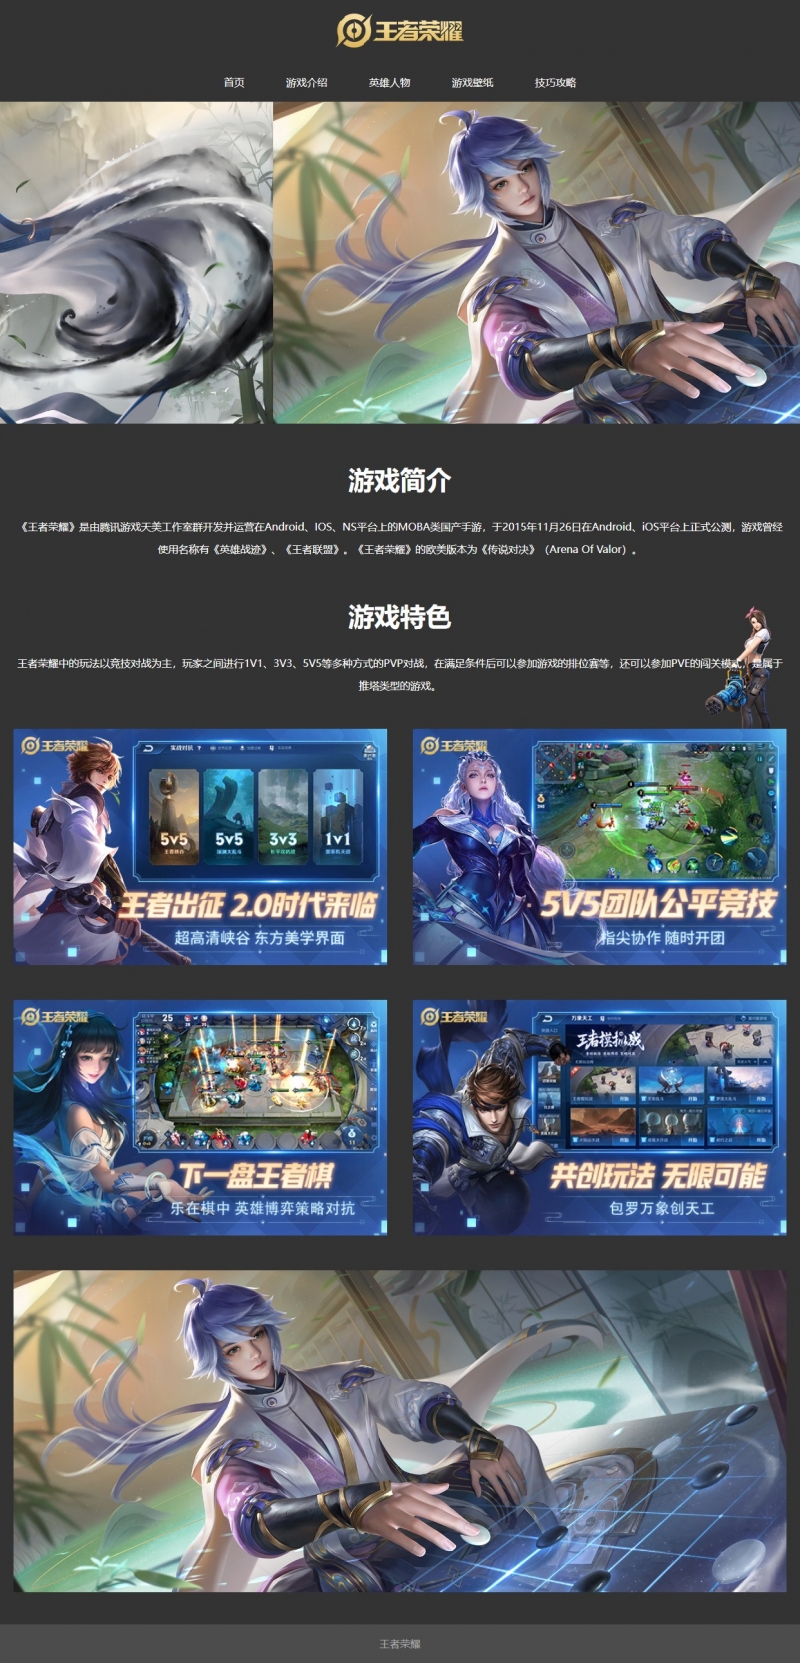 王者荣耀游戏5网页html+css+js轮播精选下载